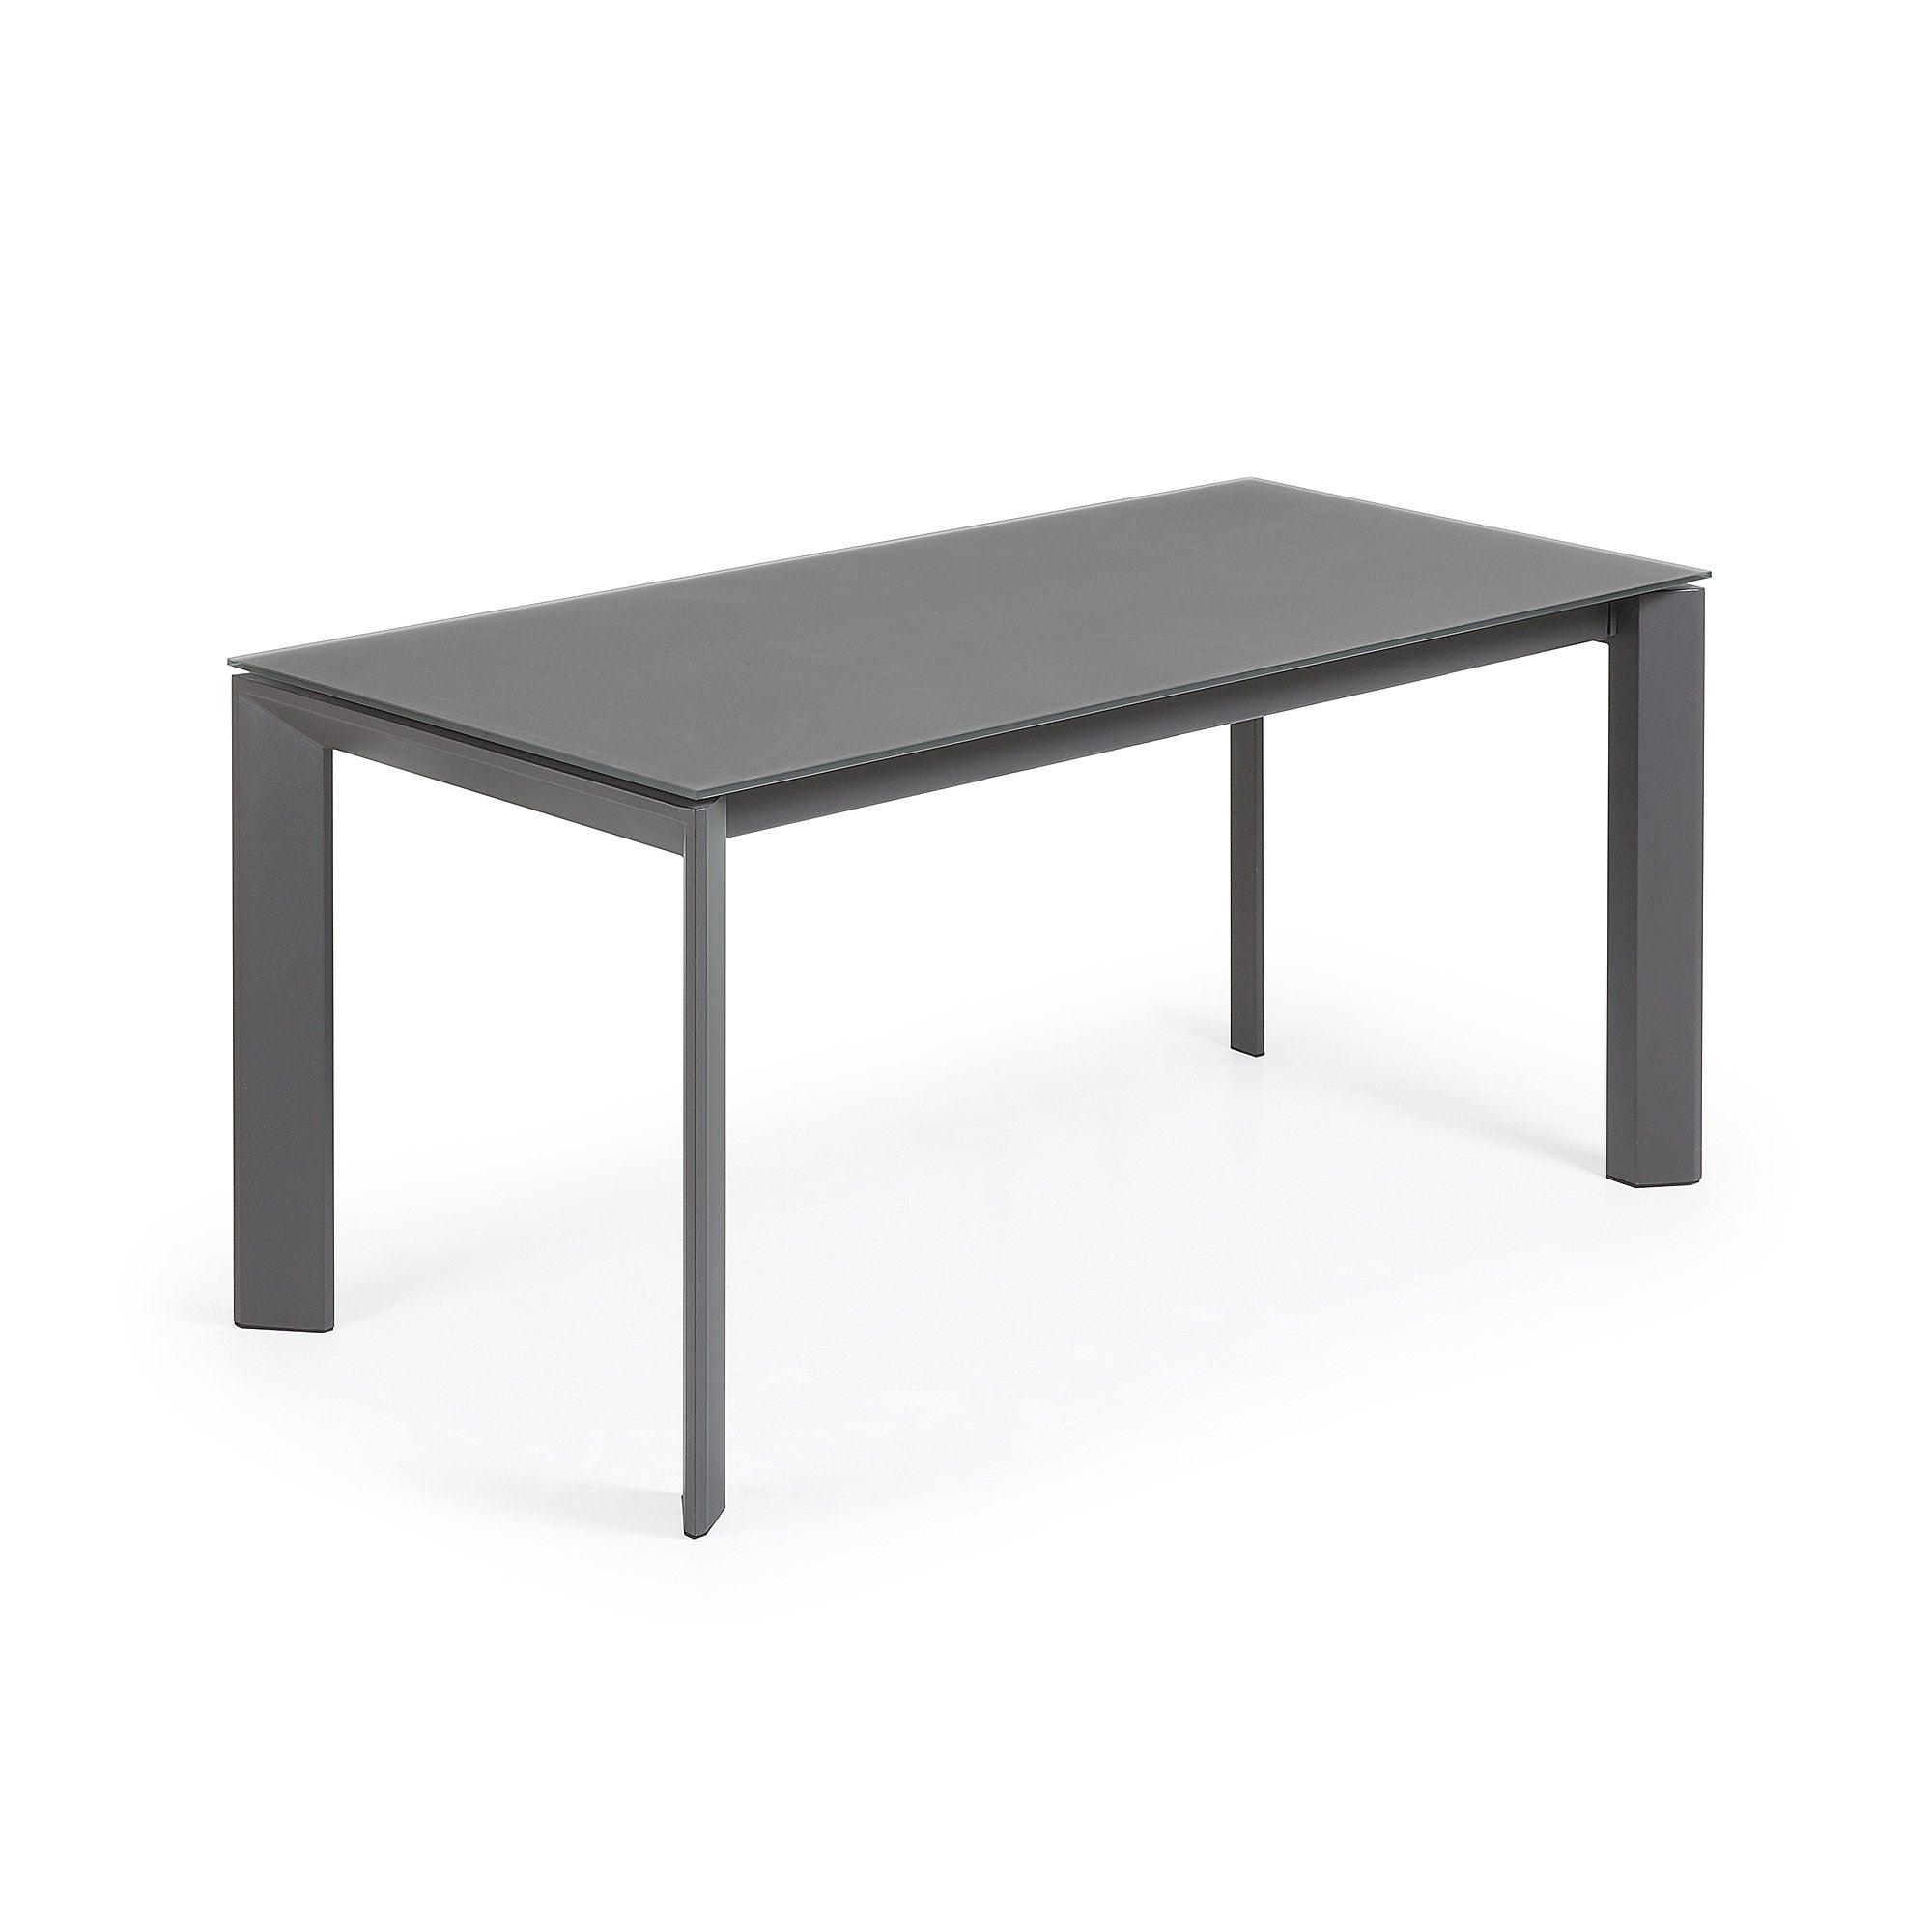 Axis kihúzható asztal szürke üvegből, sötétszürke acéllábakkal, 160 (220) cm, 160 (220) cm